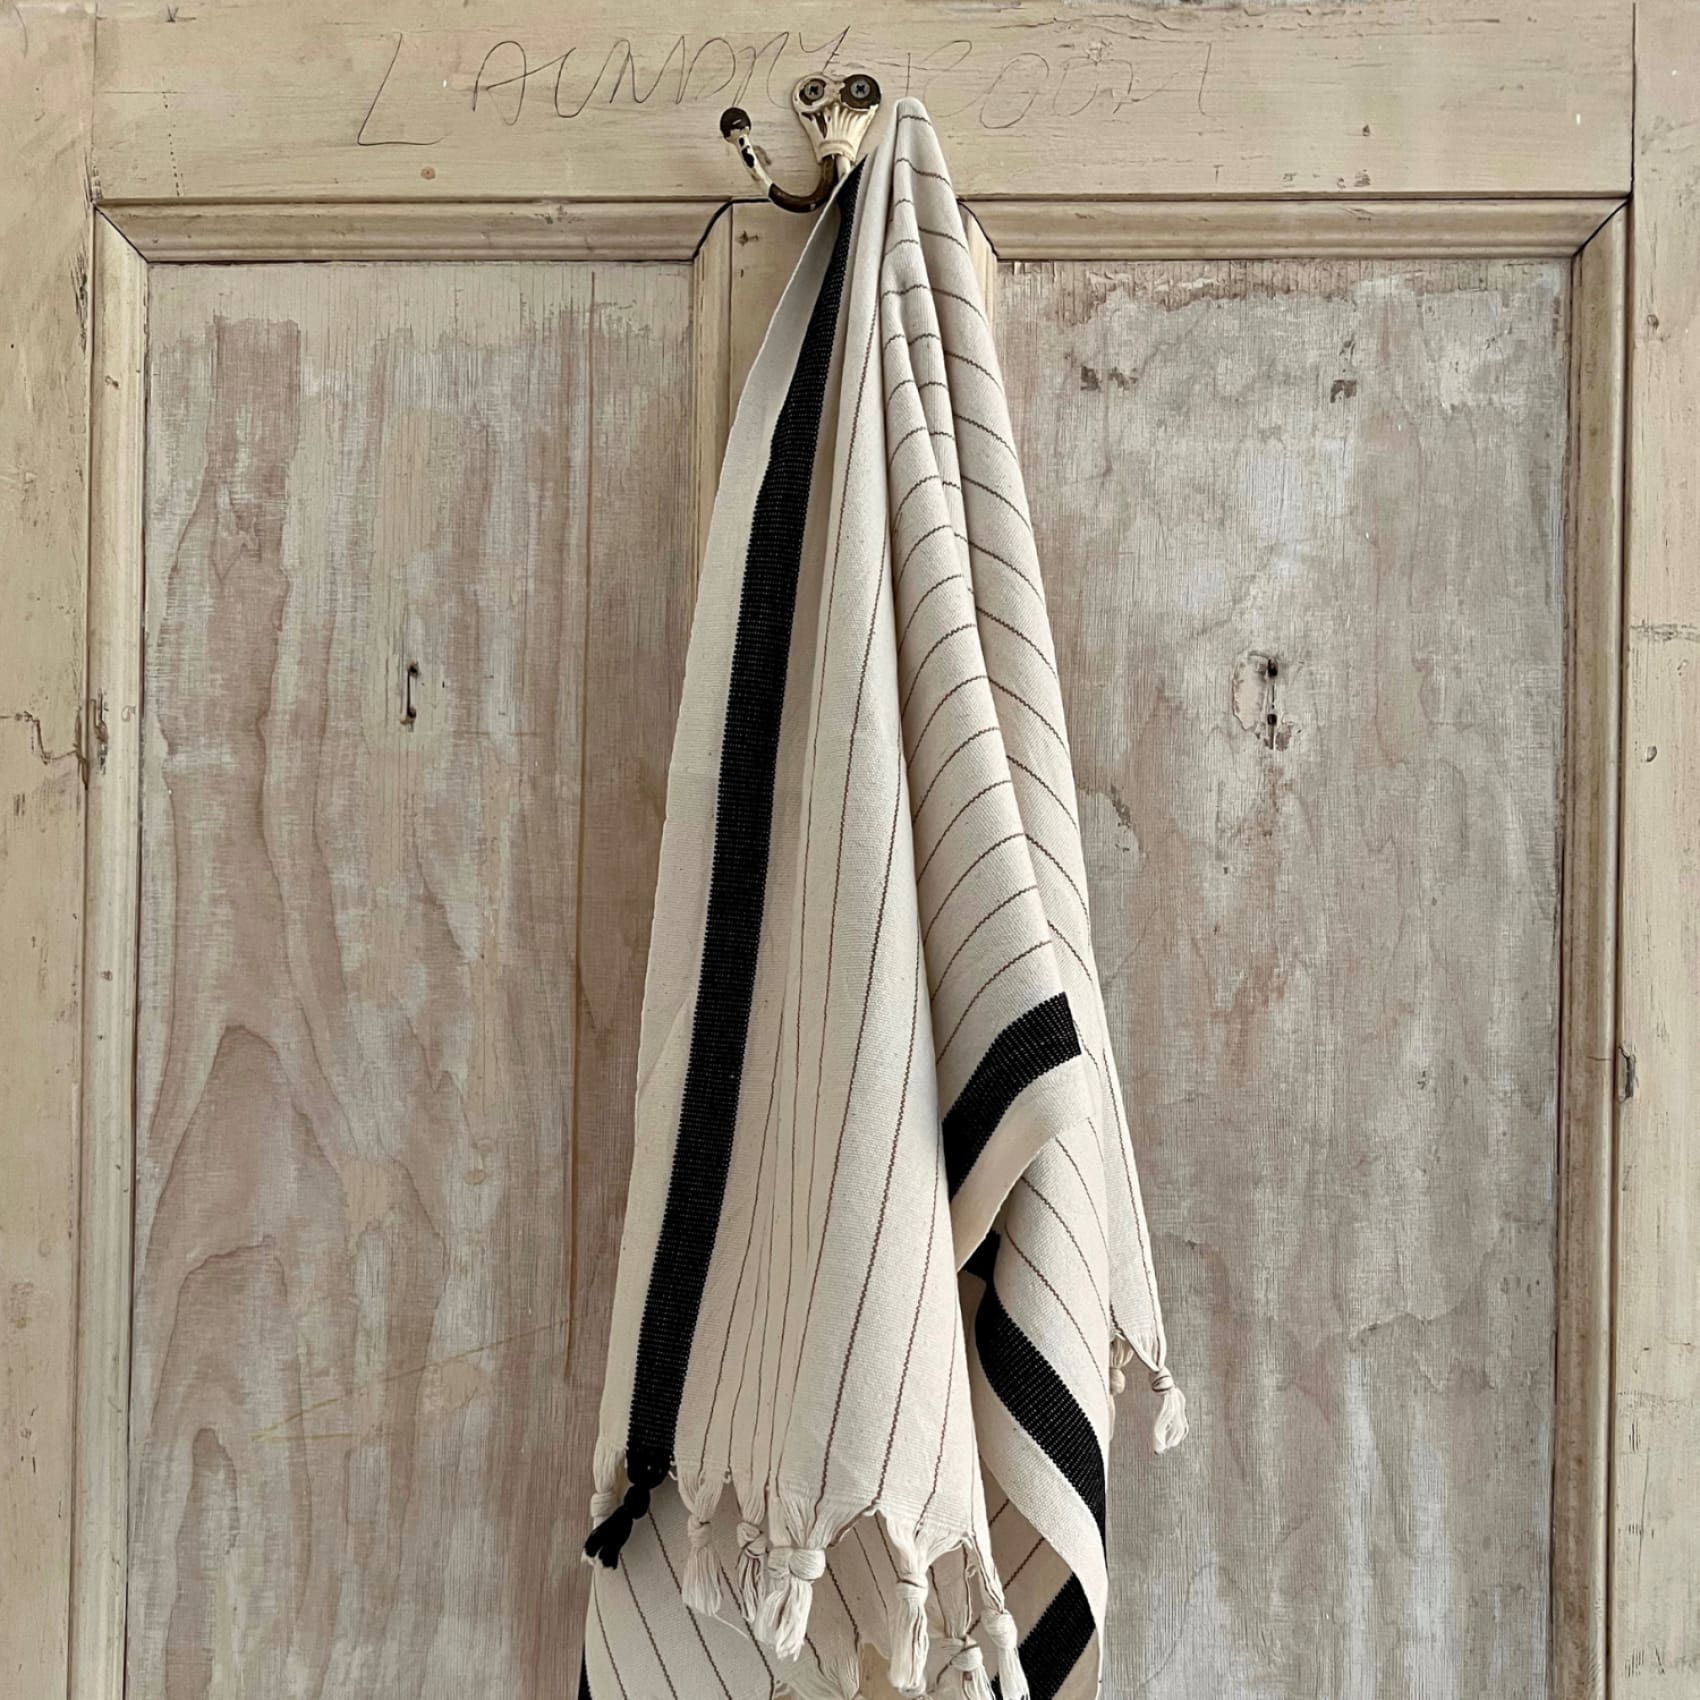 capella-cotton-hand-towel-set-save-5-bundle-bundles-duo-luks-linen-clothes-hanger-beige-111.jpg